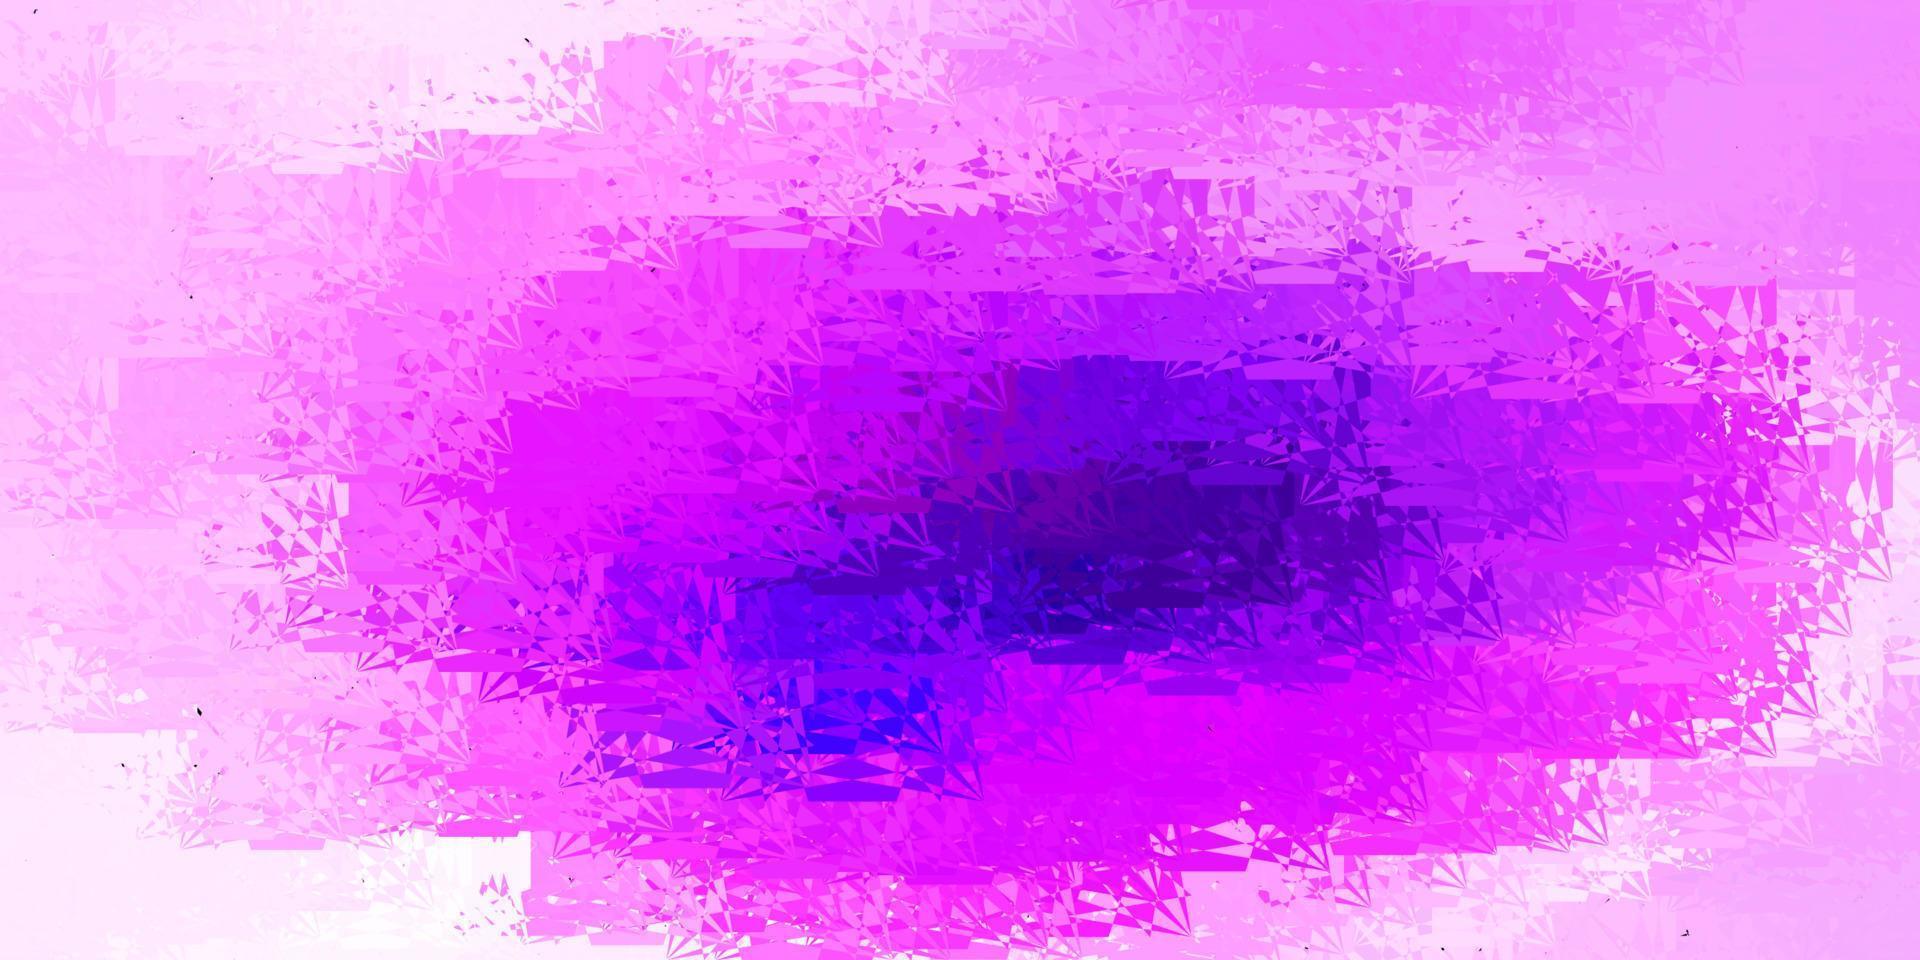 toile de fond de vecteur violet clair, rose avec des triangles, des lignes.